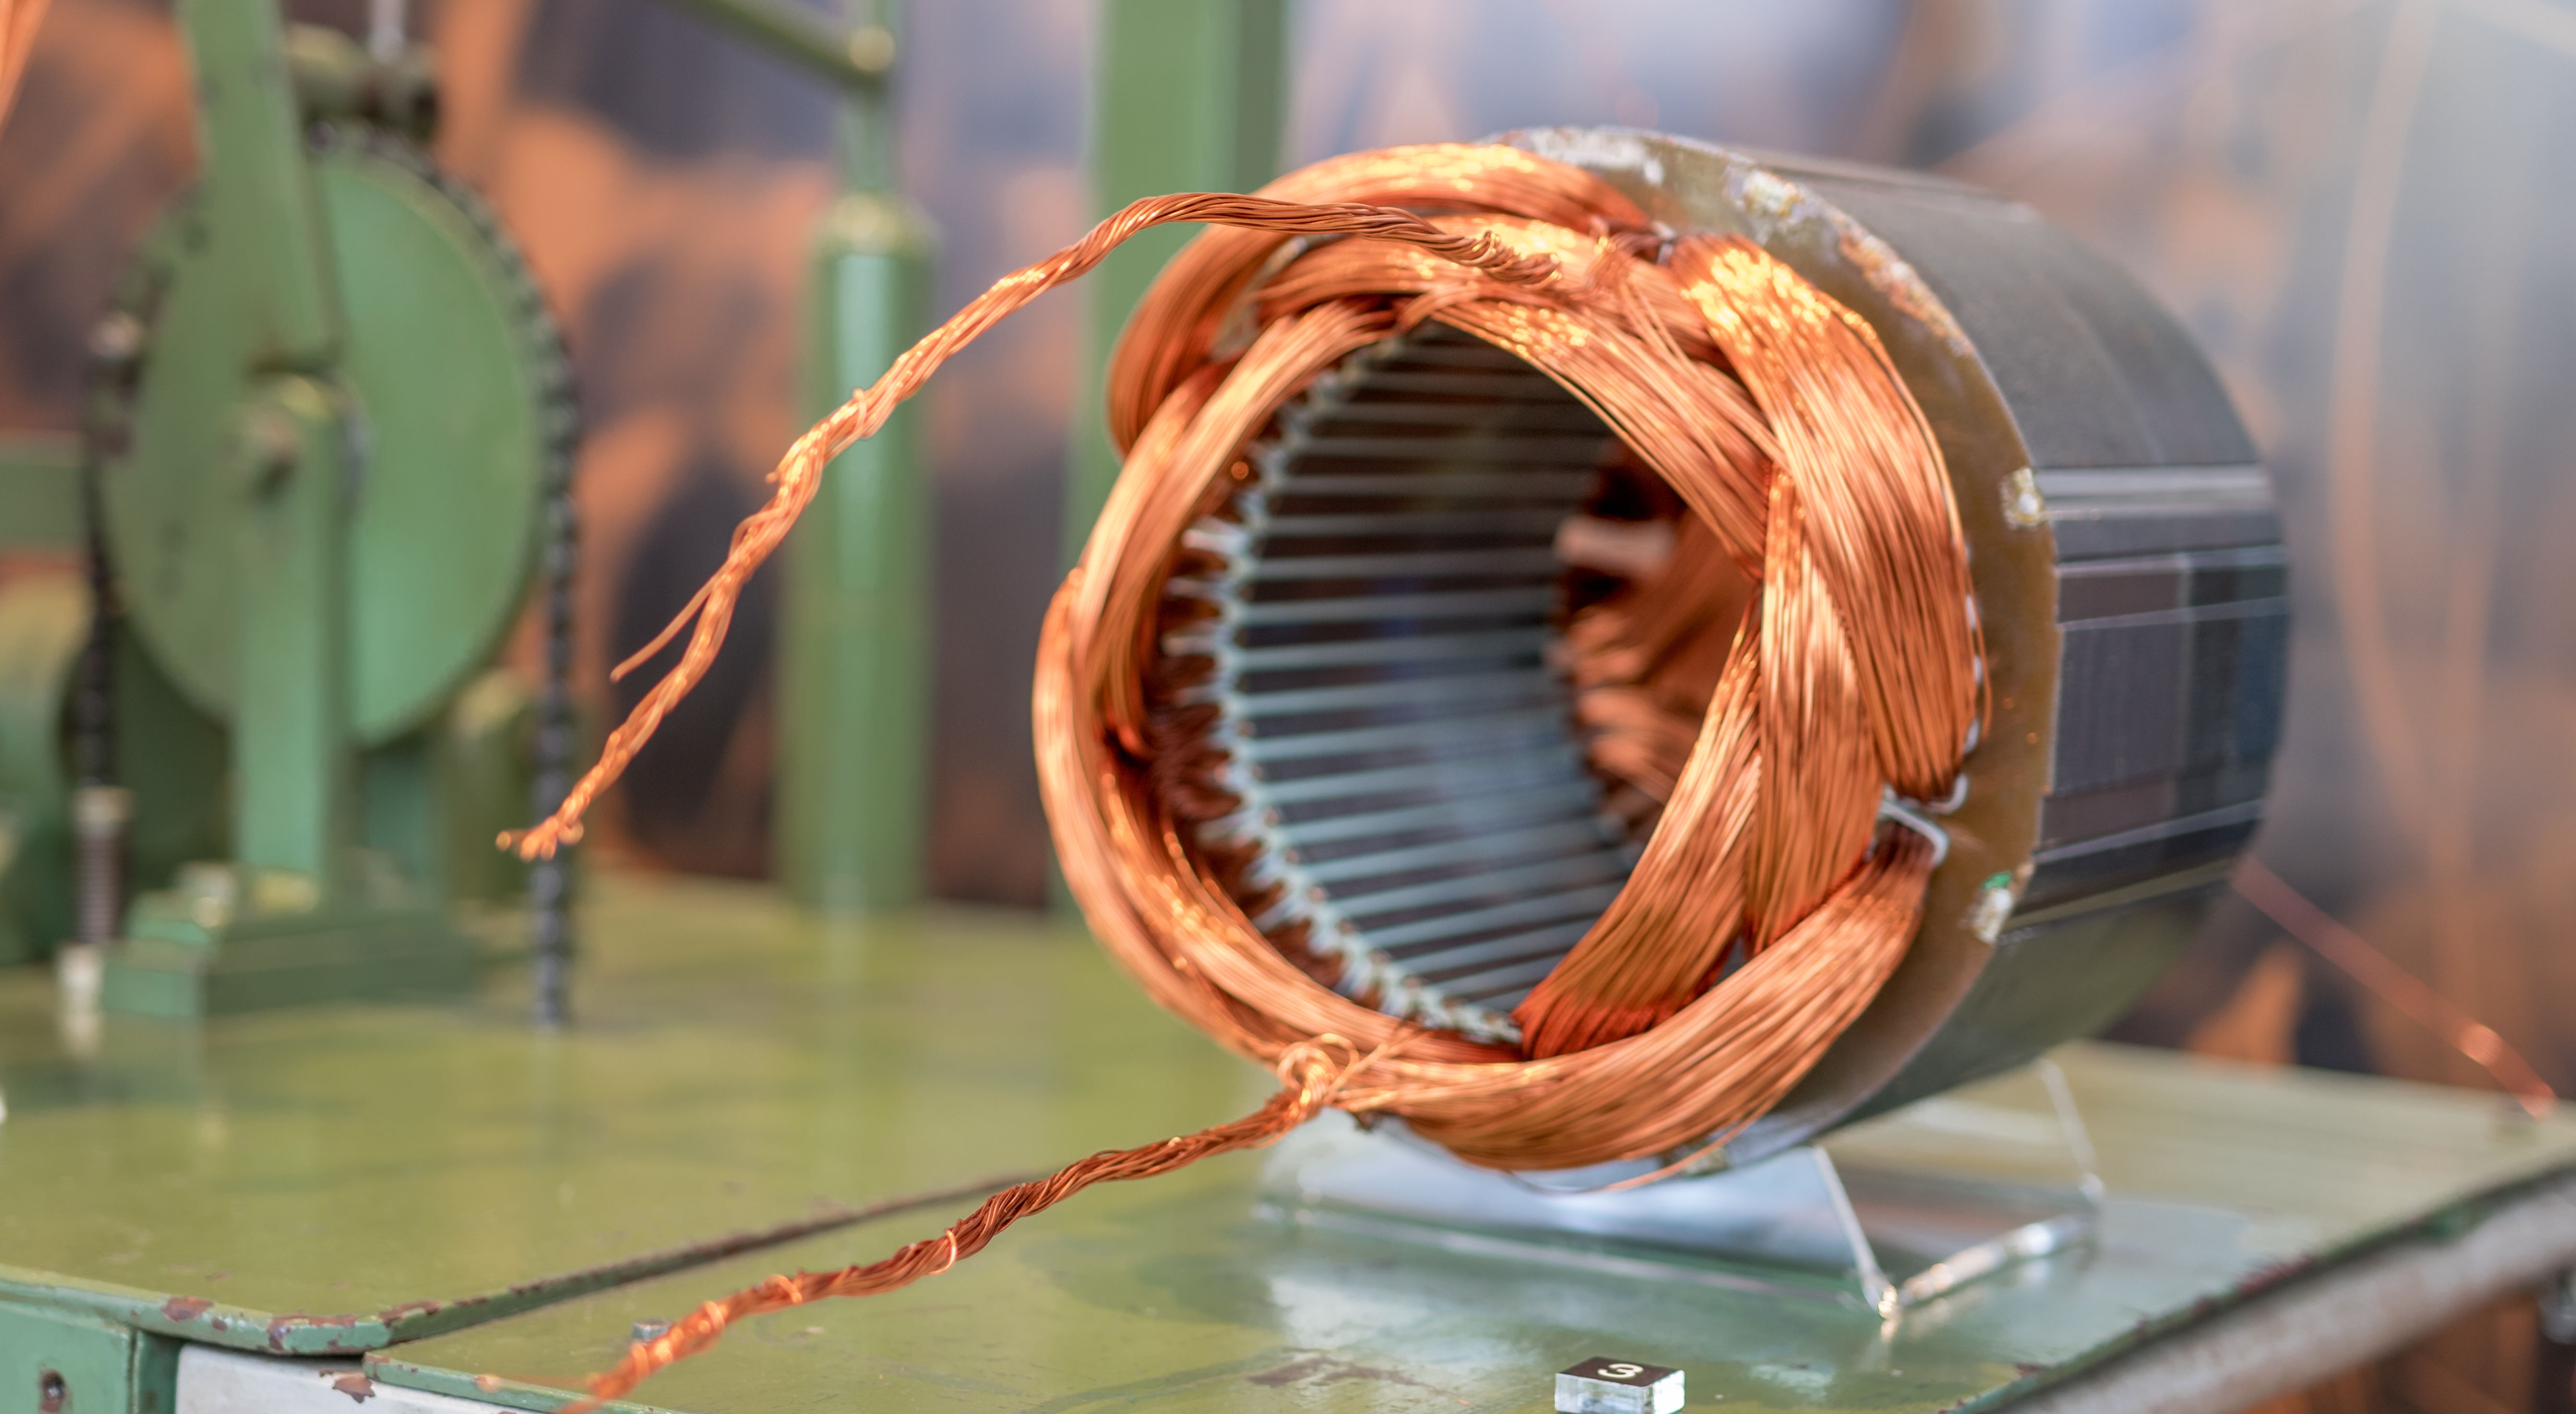 Processo de colocação das bobinas de fios de cobre em um motor elétrico. Patrimônio Industrial da WEG S.A de Jaraguá do Sul. Acervo: Museu WEG de Ciência e Tecnologia.